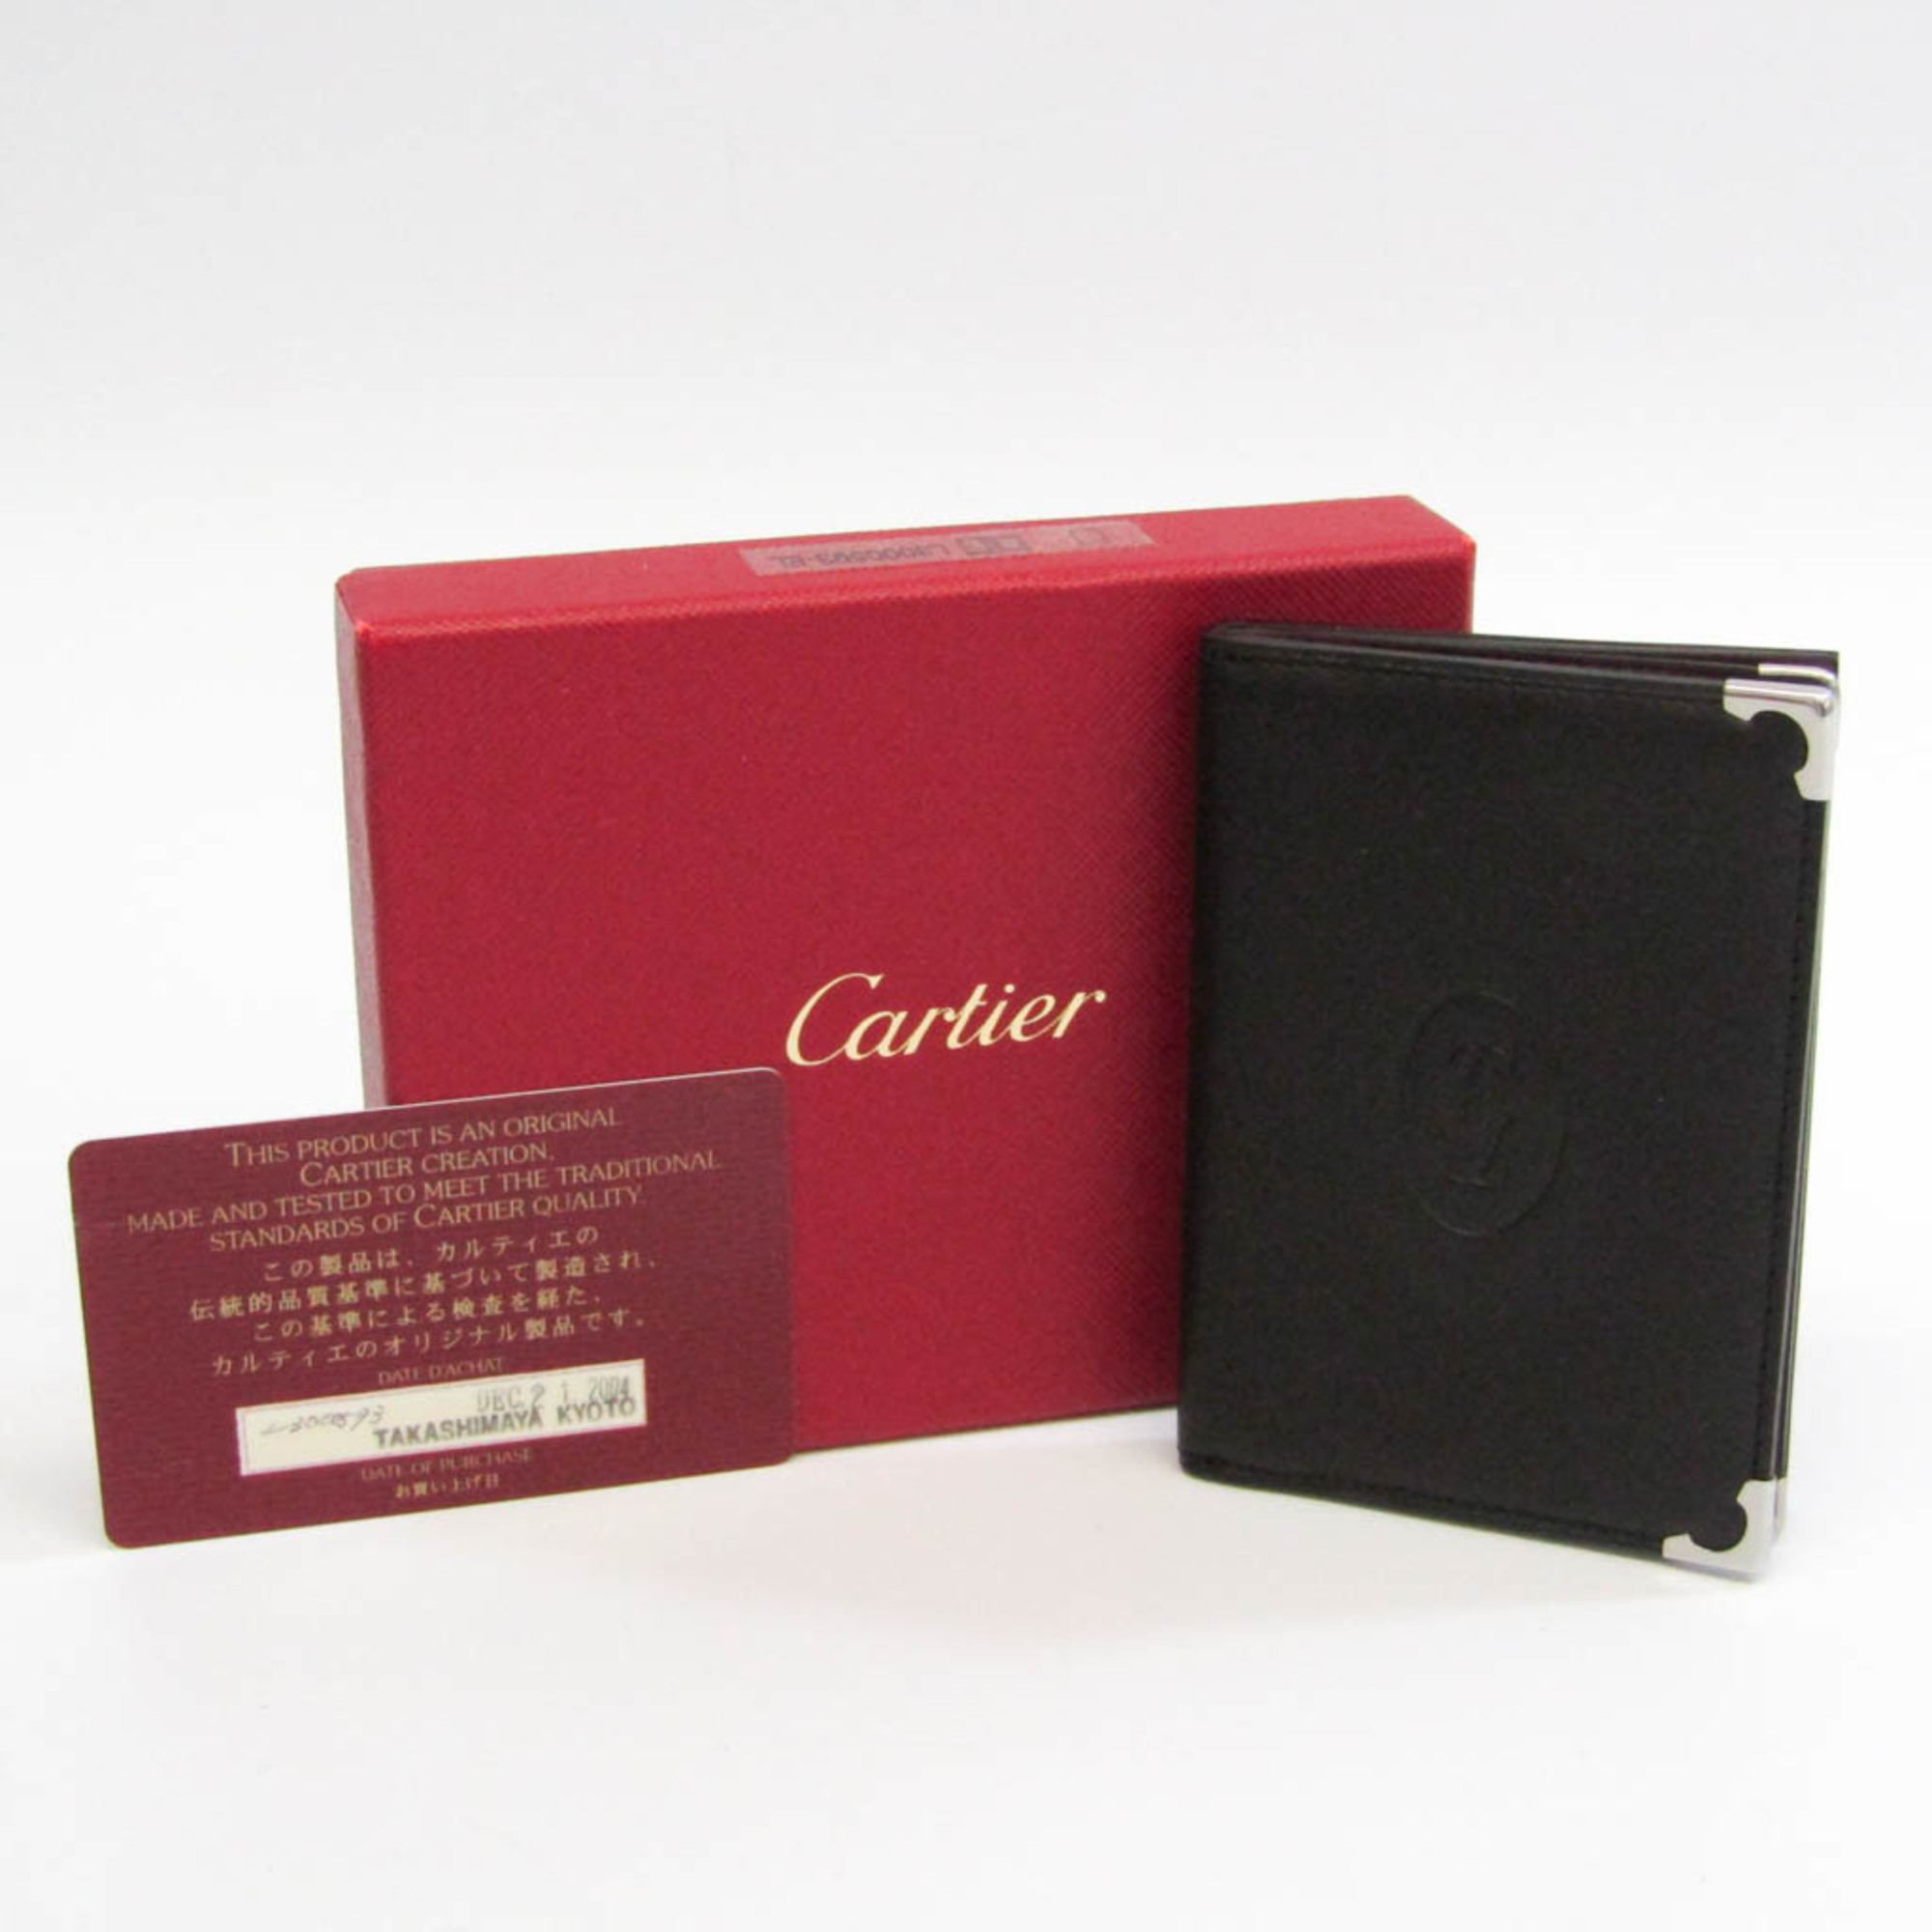 カルティエ(Cartier) カボション ドゥ カルティエ L3000593 レザー カードケース ブラック,ボルドー